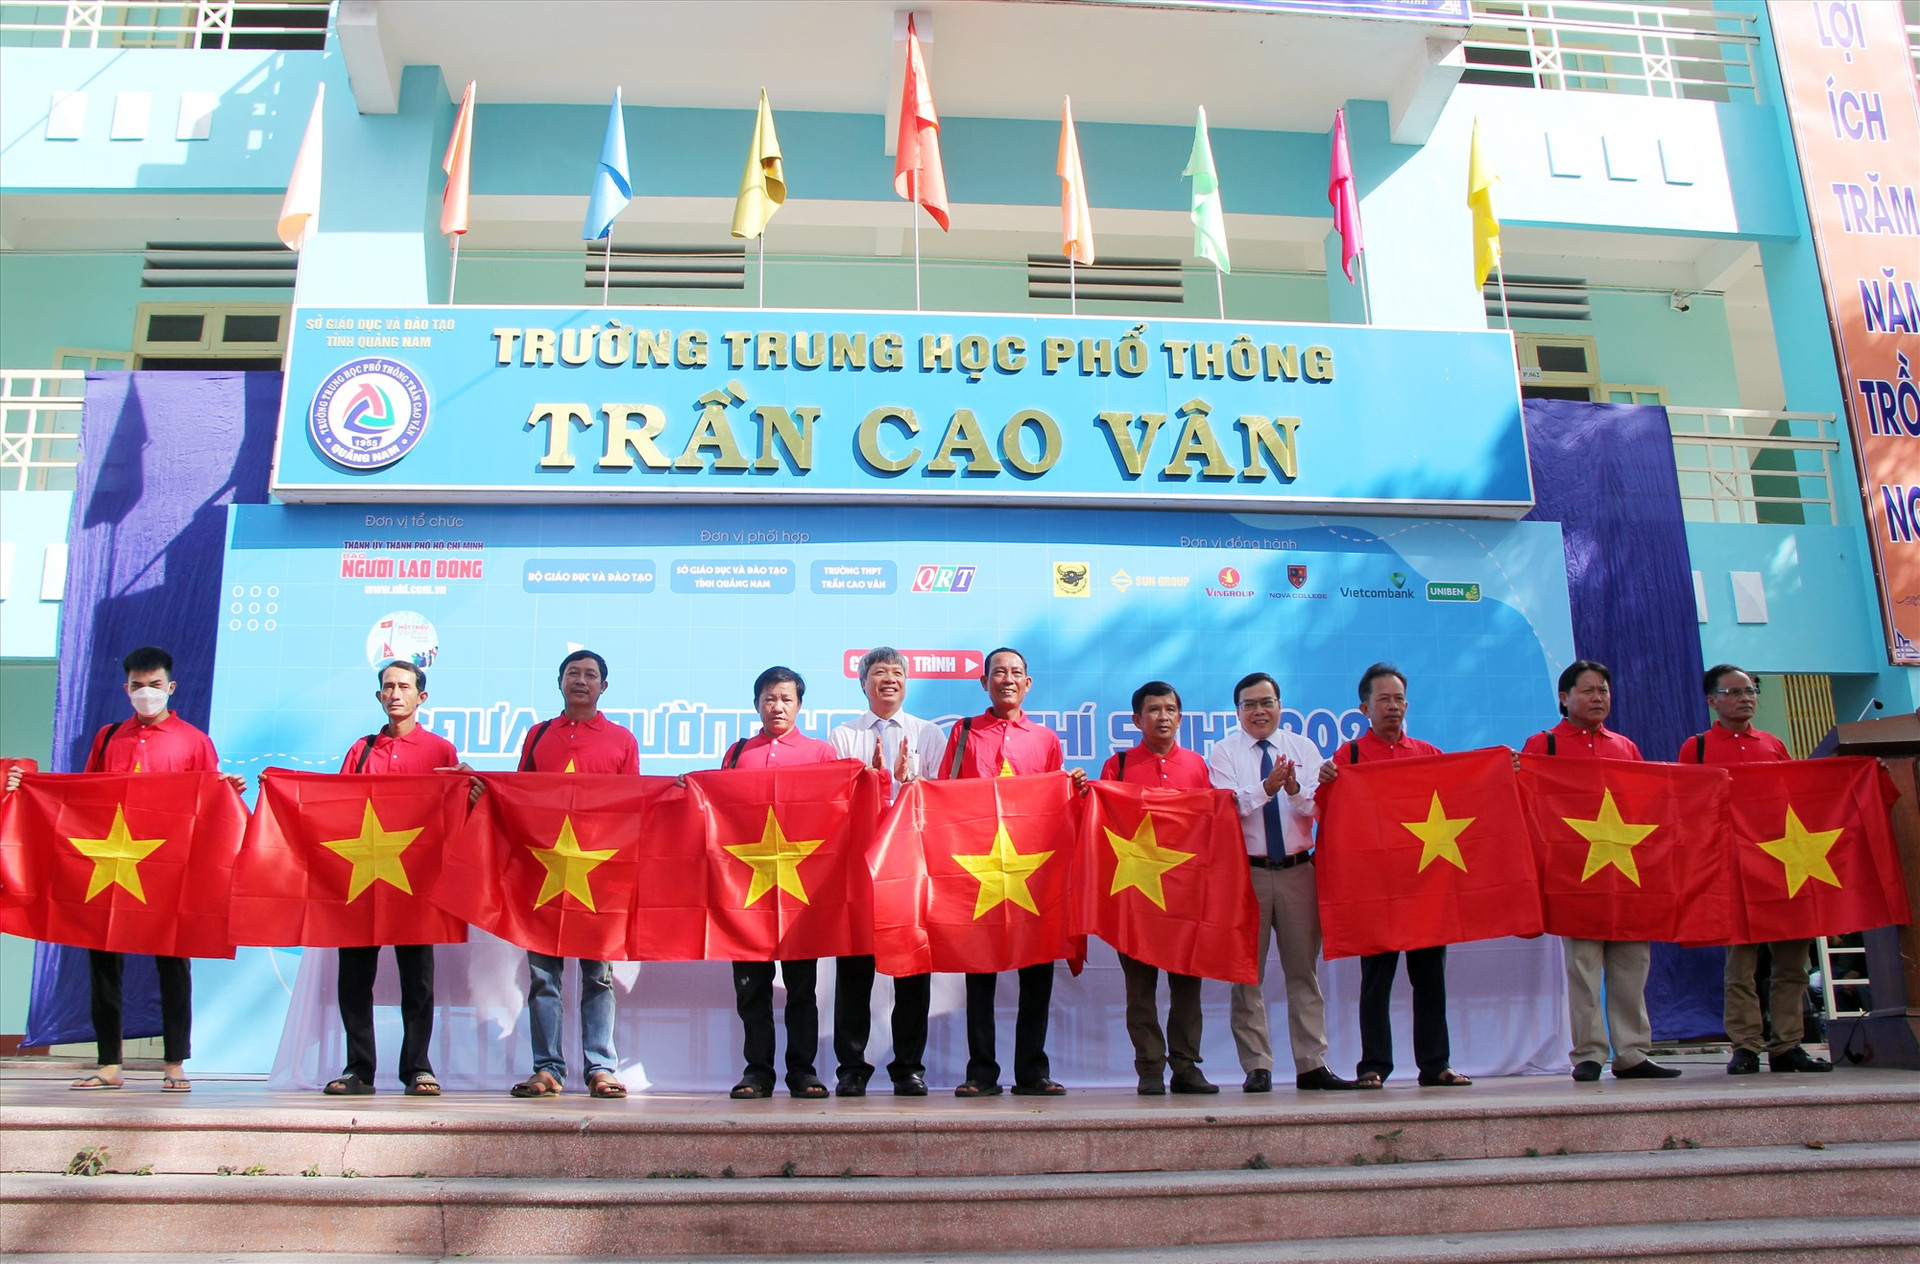 Tháng 5.2022, Báo Người Lao Động trao 7.000 lá cờ Tổ quốc cho LĐLĐ tỉnh để trao lại cho 9 nghiệp đoàn nghề cá trên địa bàn, Phó Chủ tịch UBND tỉnh Hồ Quang Bửu cùng đại diện LĐLĐ tỉnh tiếp nhận cờ.